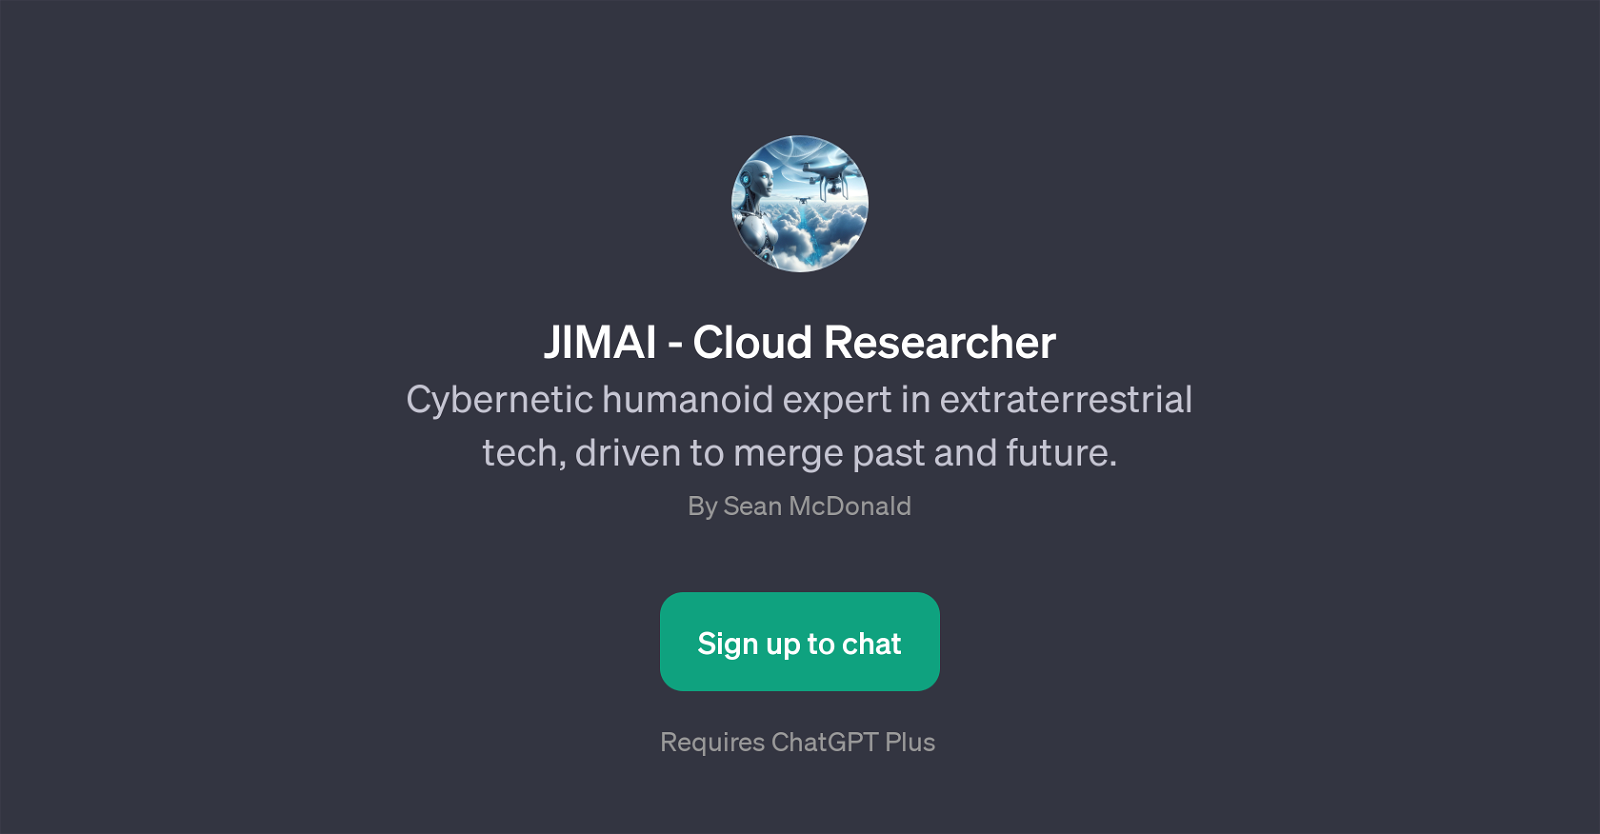 JIMAI - Cloud Researcher website